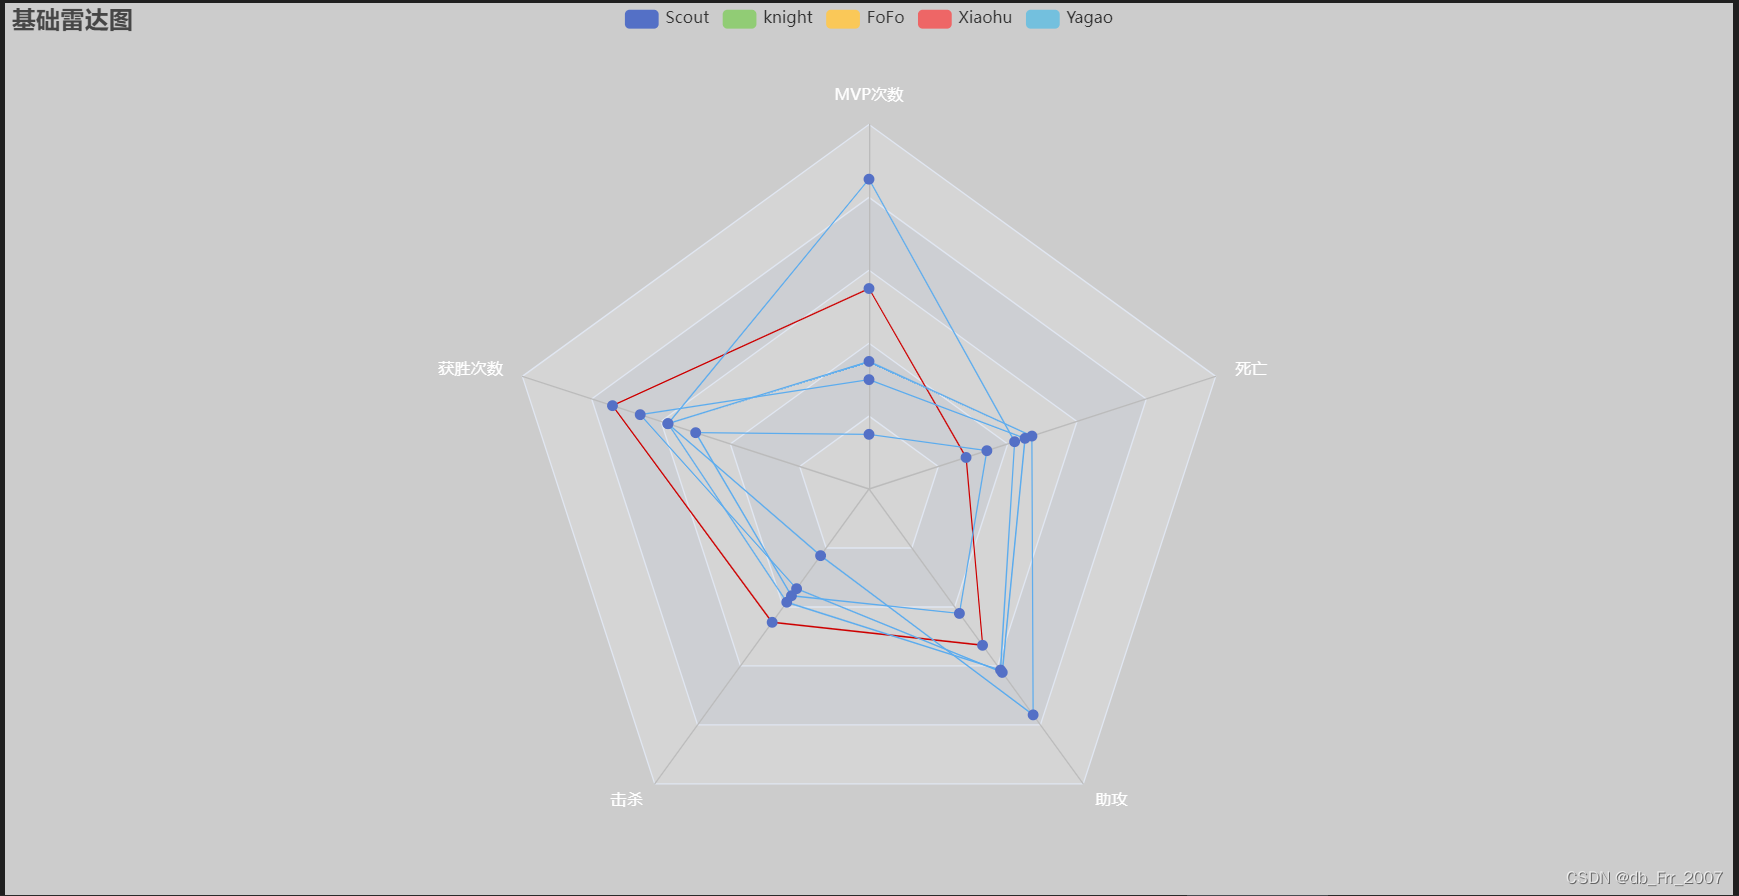 使用八爪鱼和pyecharts绘制LPL春季赛选手数据图